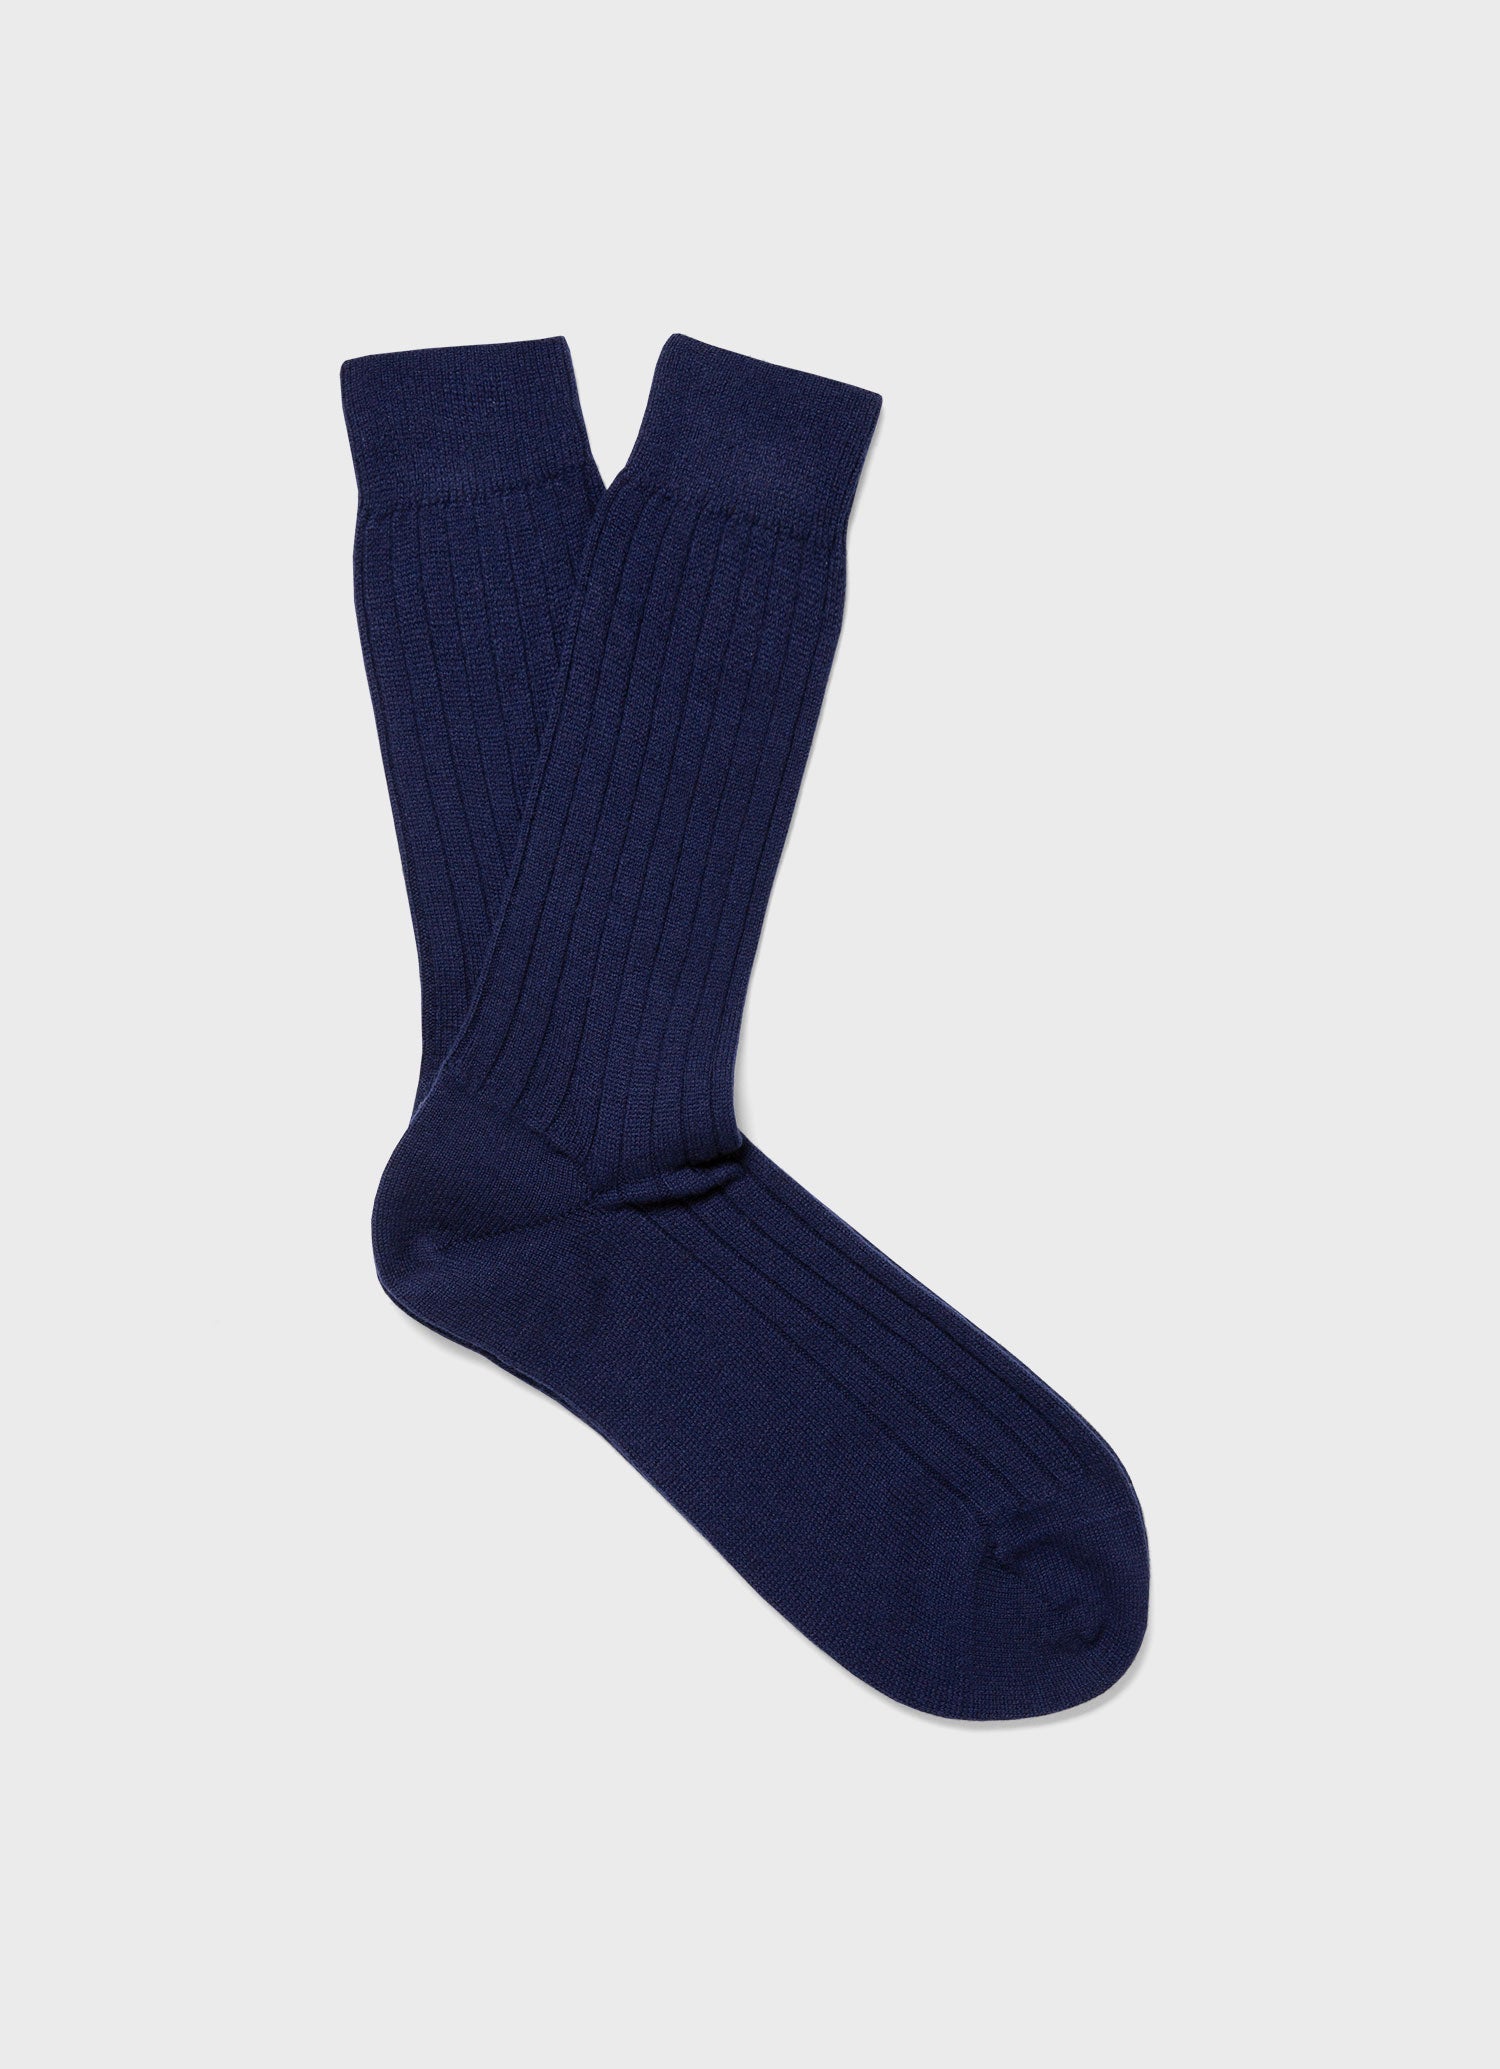 Men's Cashmere Ribbed Socks in Navy